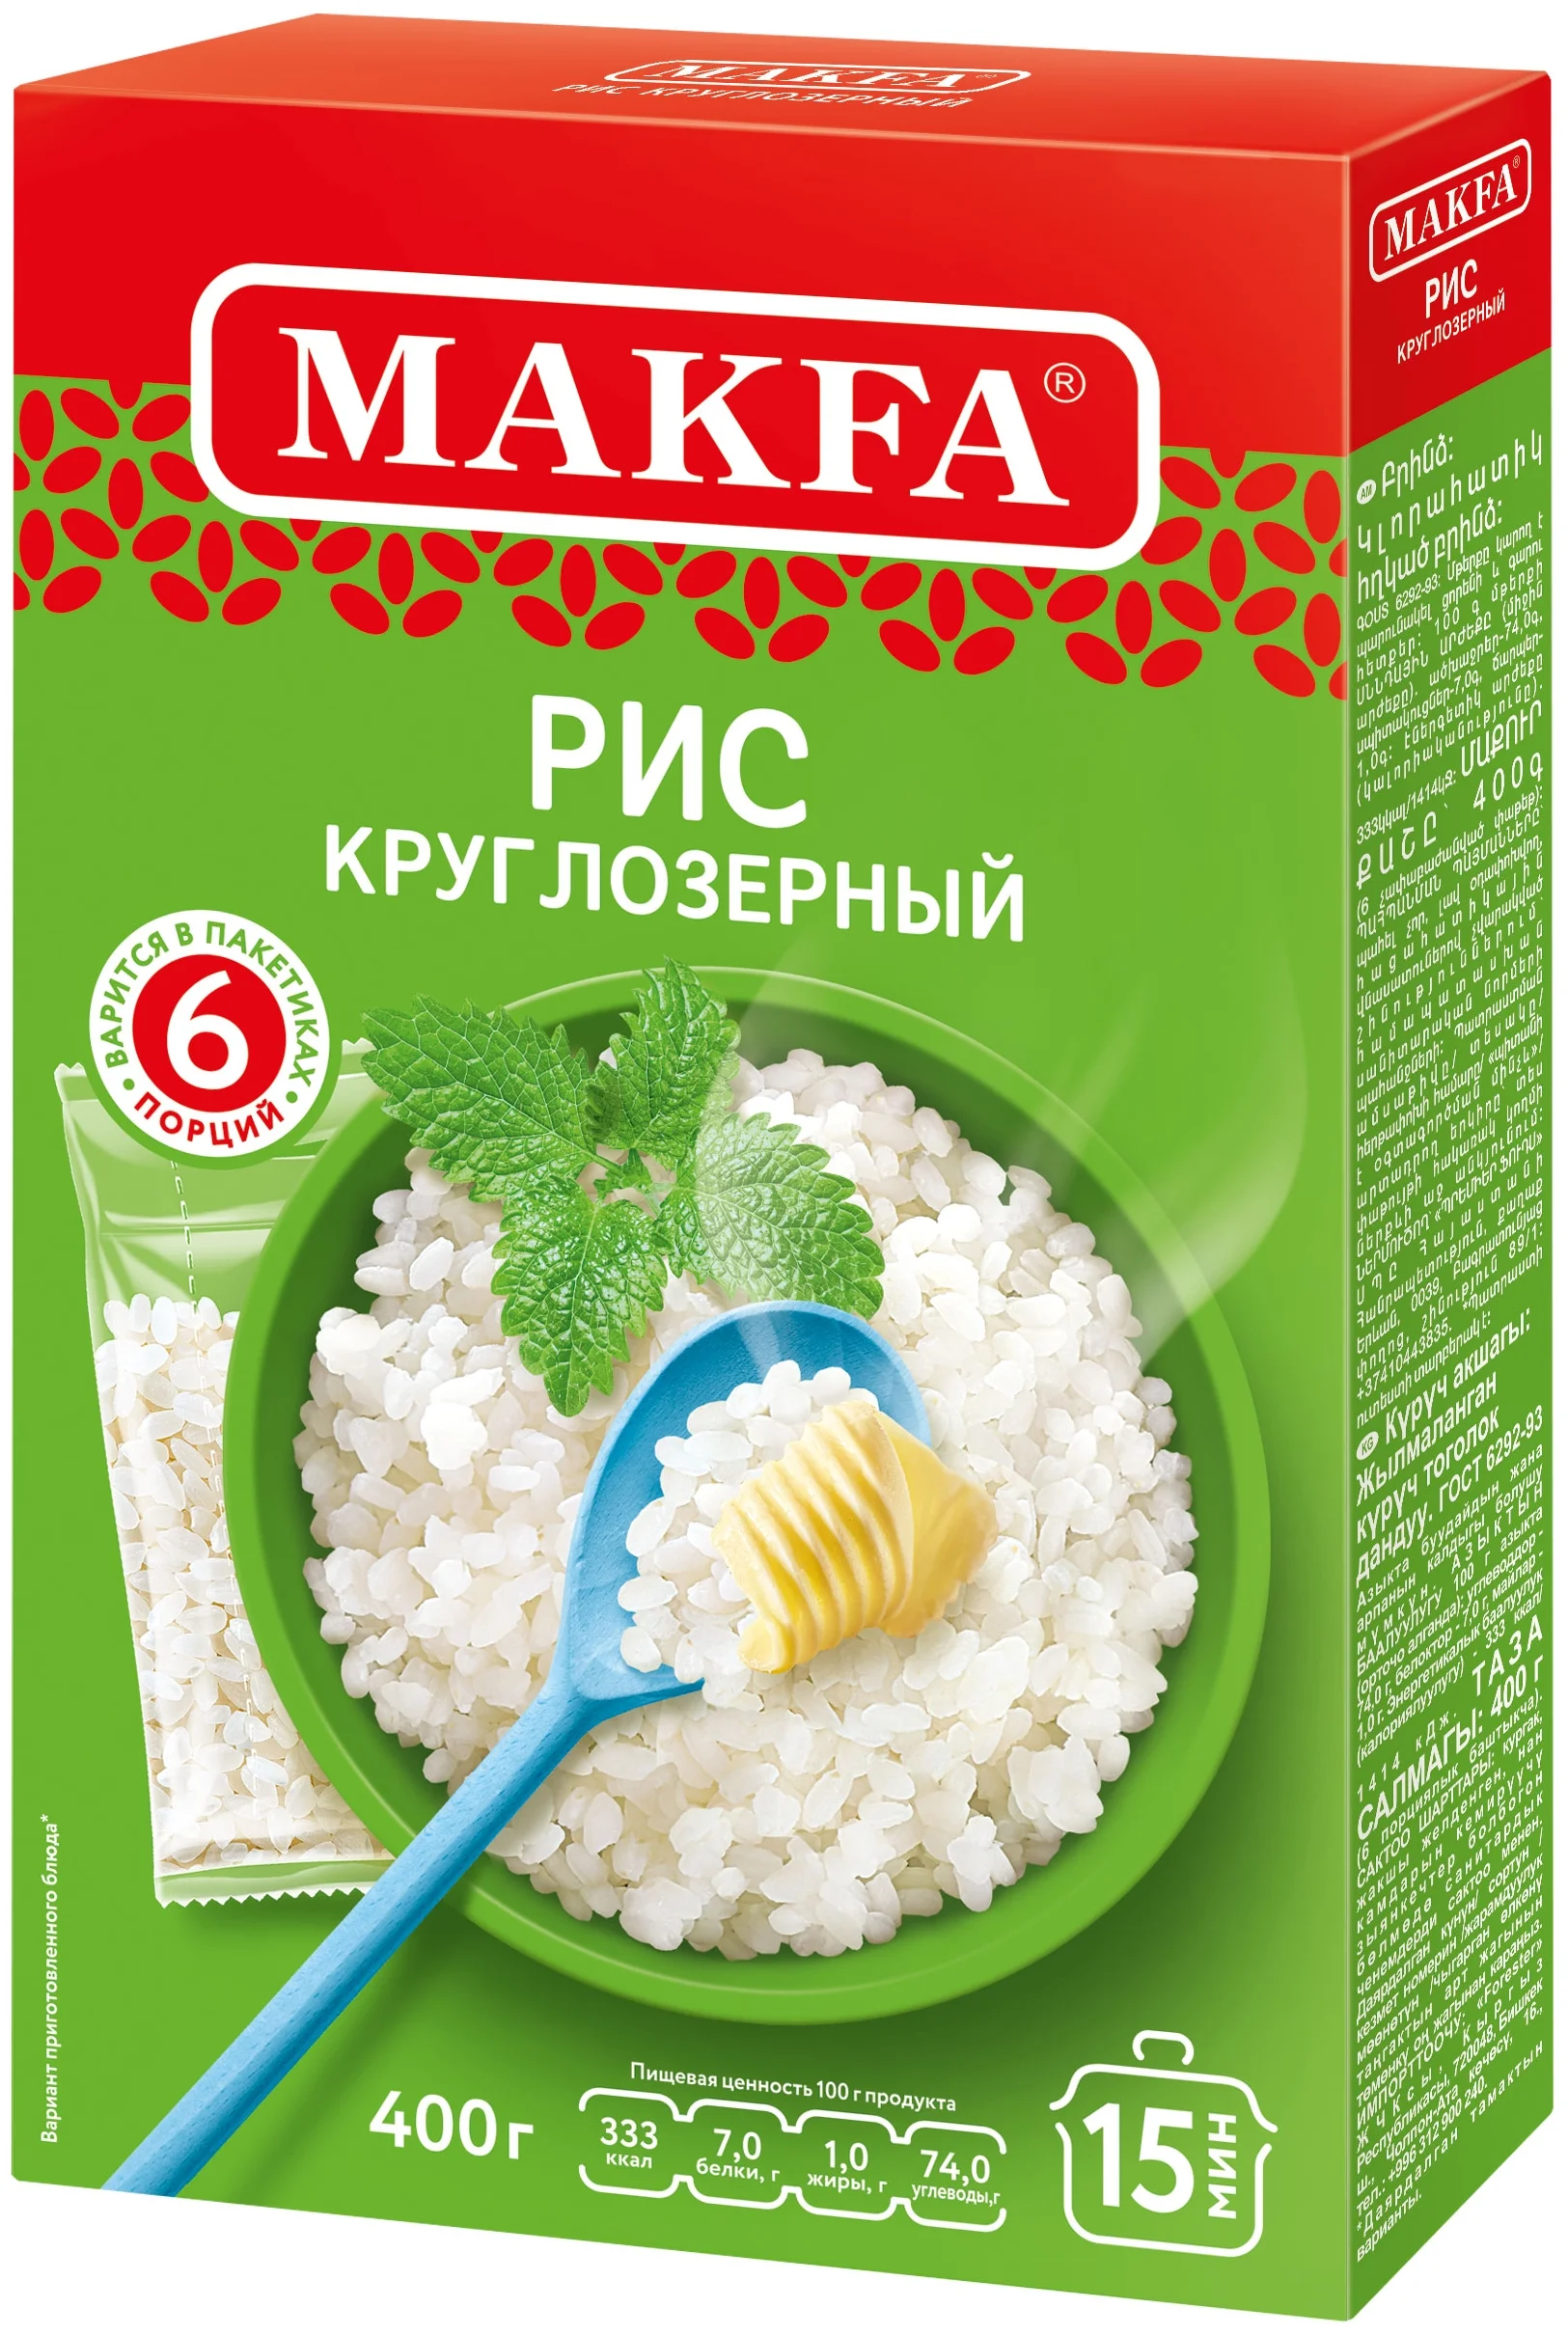 MAKFA, Рис круглозерный в варочных пакетах, 400 гр